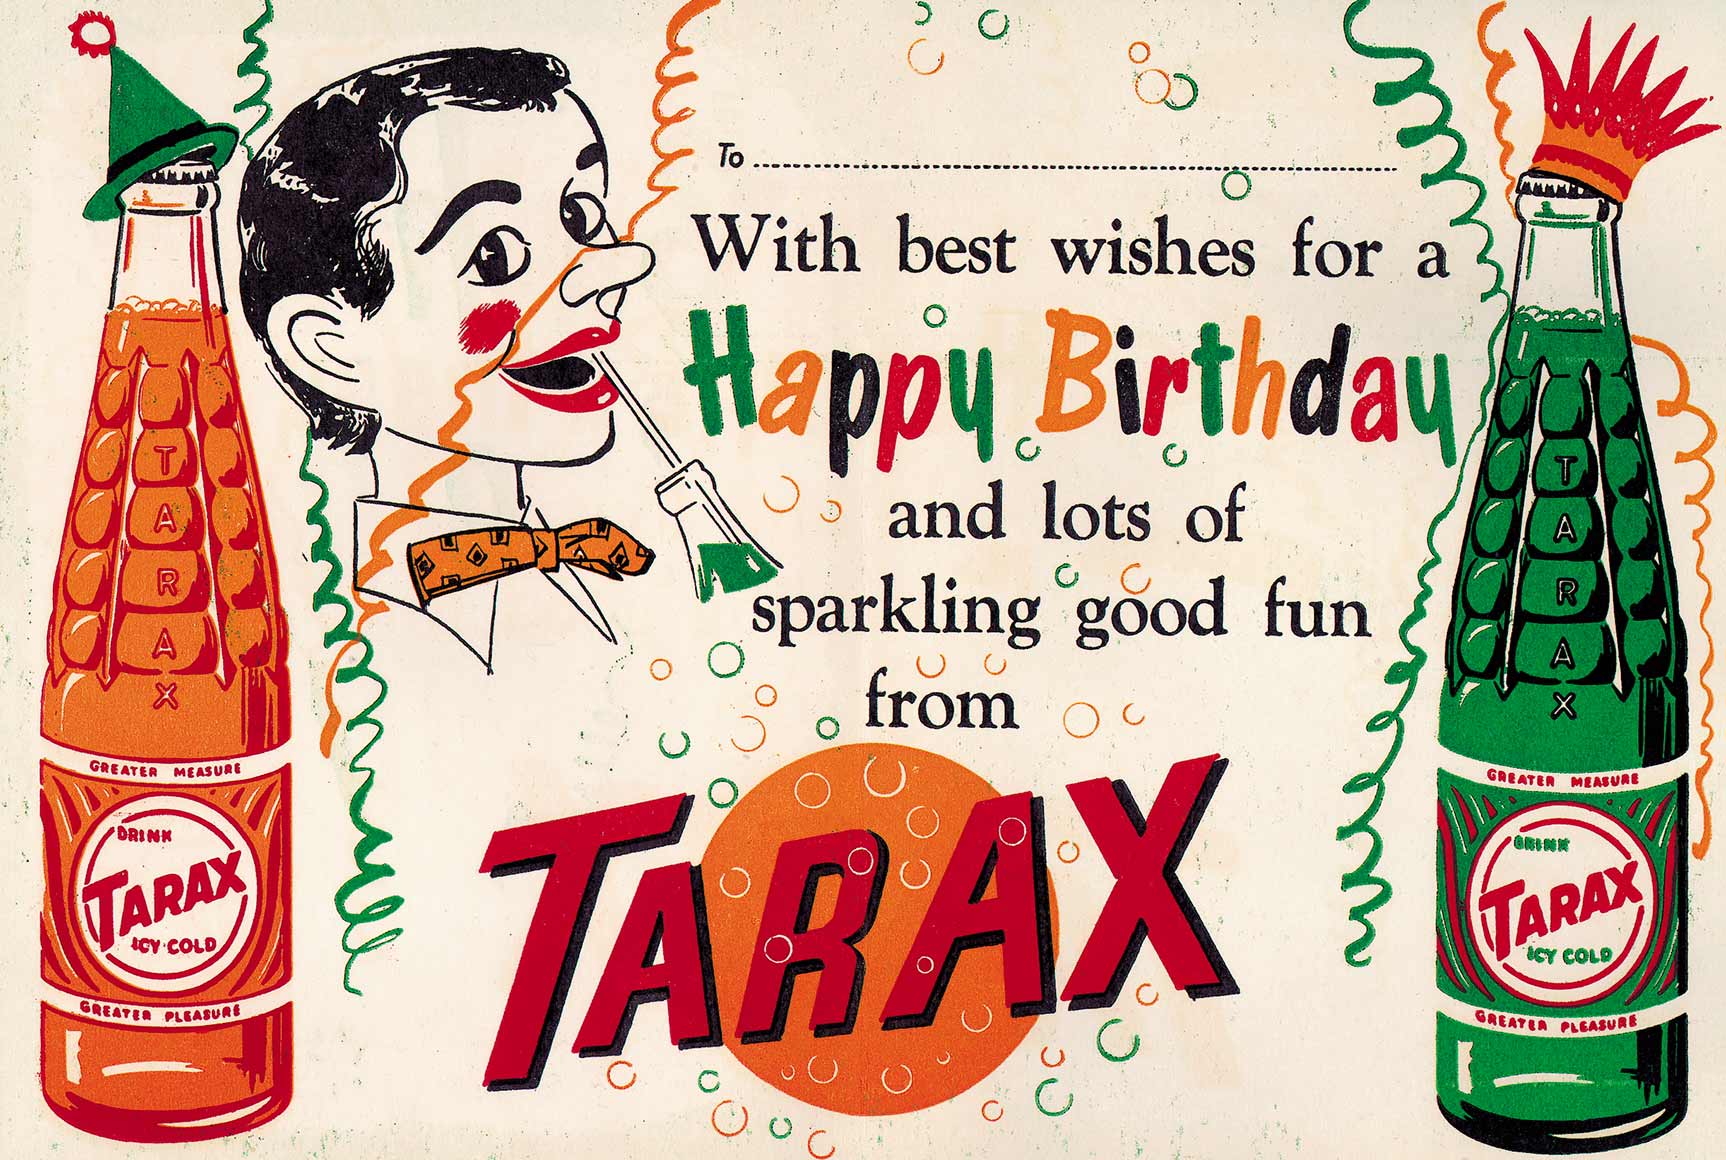 The Happy/Tarax Show